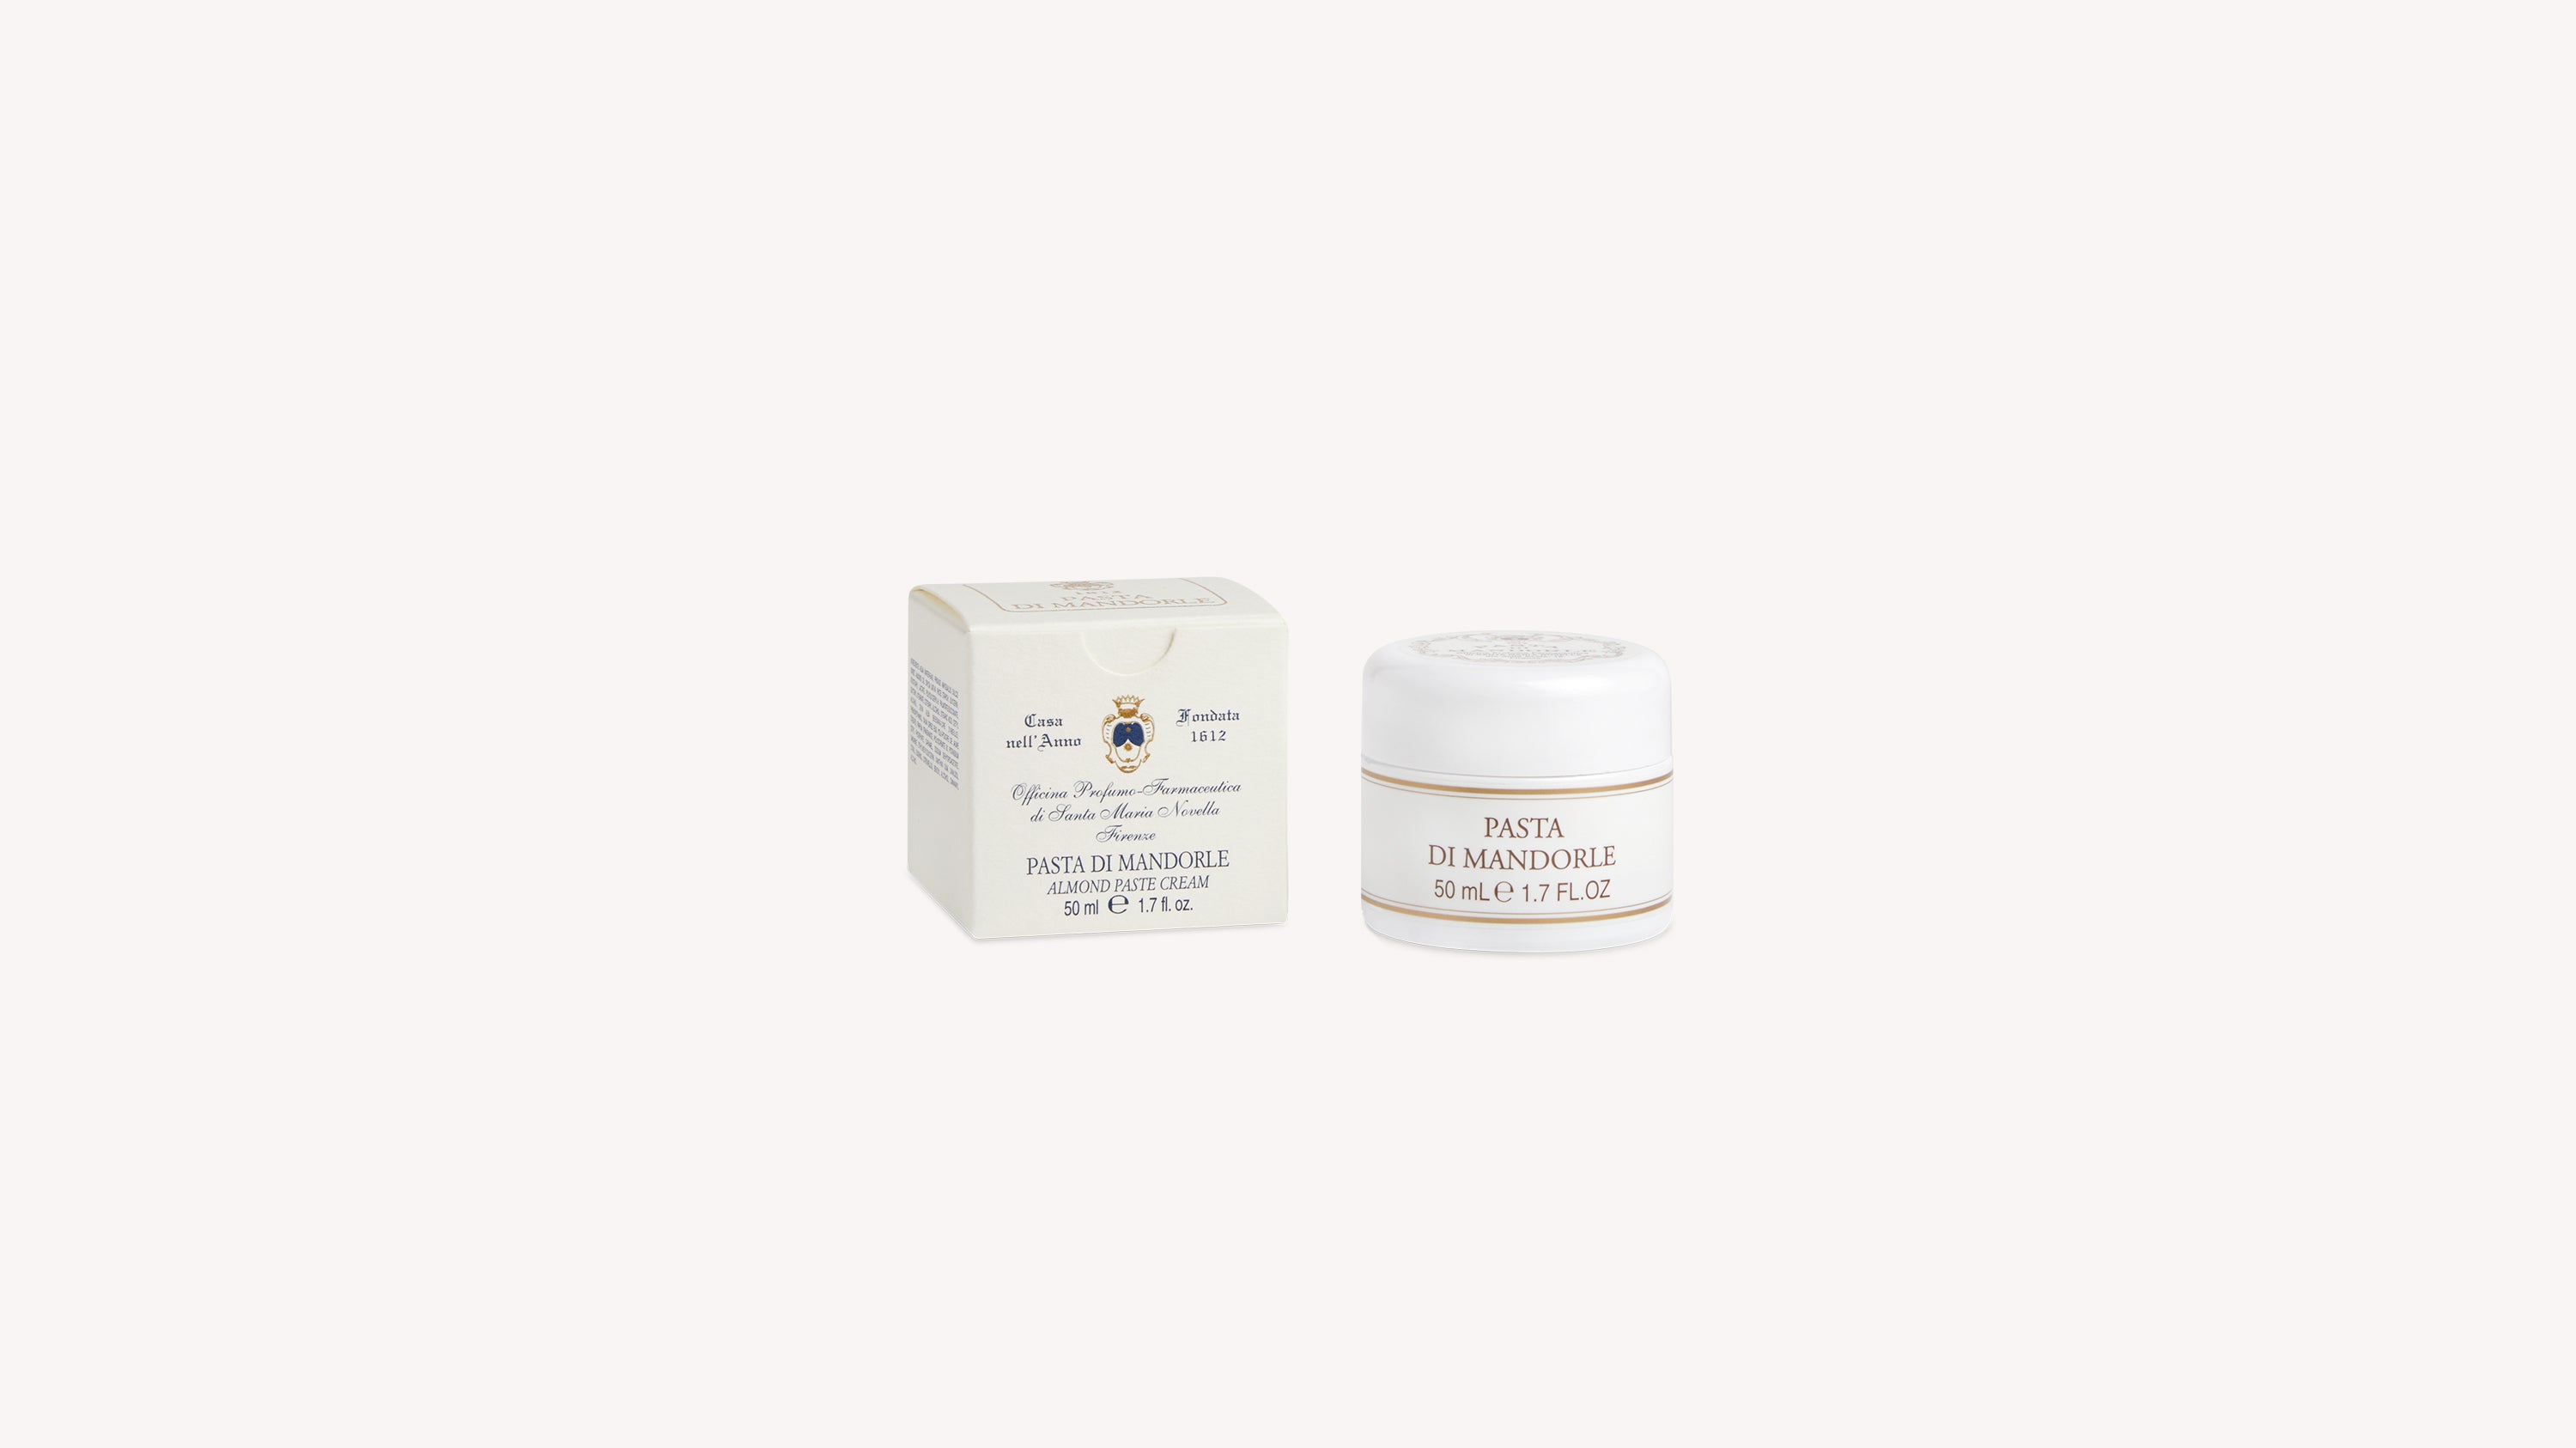 Almond Paste Cream Body Care officina-smn-usa-ca.myshopify.com Officina Profumo Farmaceutica di Santa Maria Novella - US